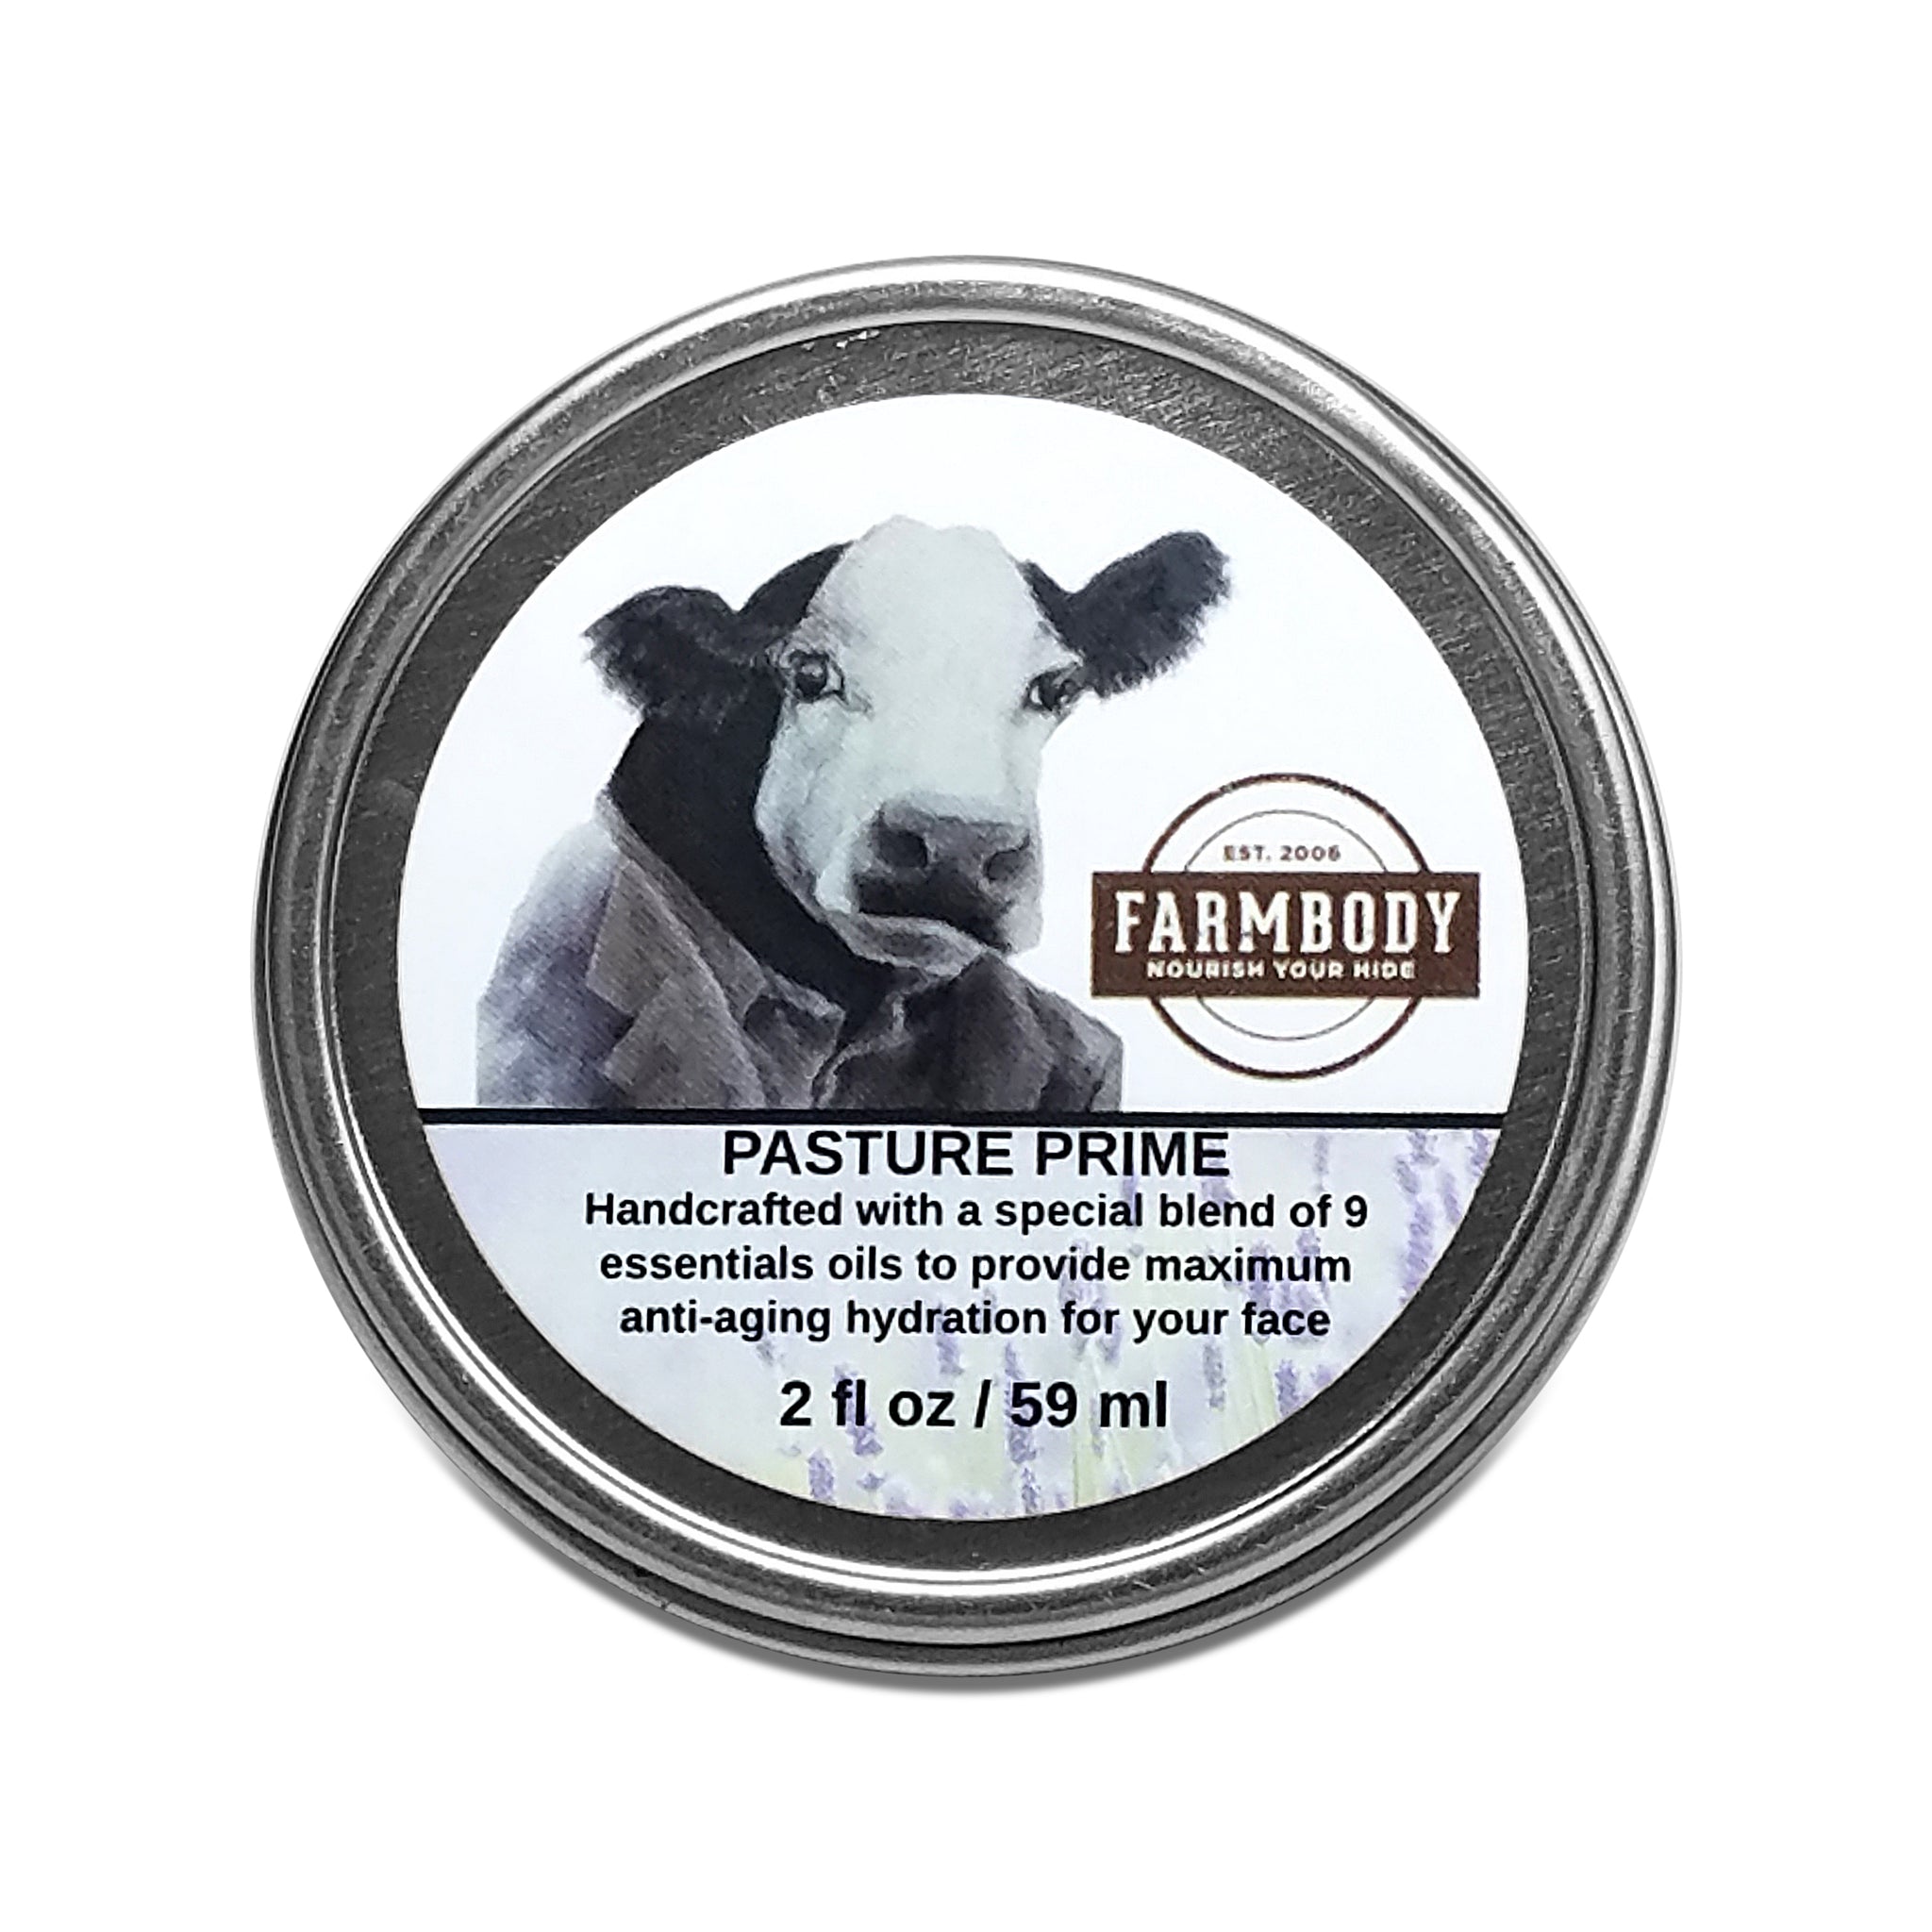 Tajmeeli has featured our Pasture Prime Night Cream!